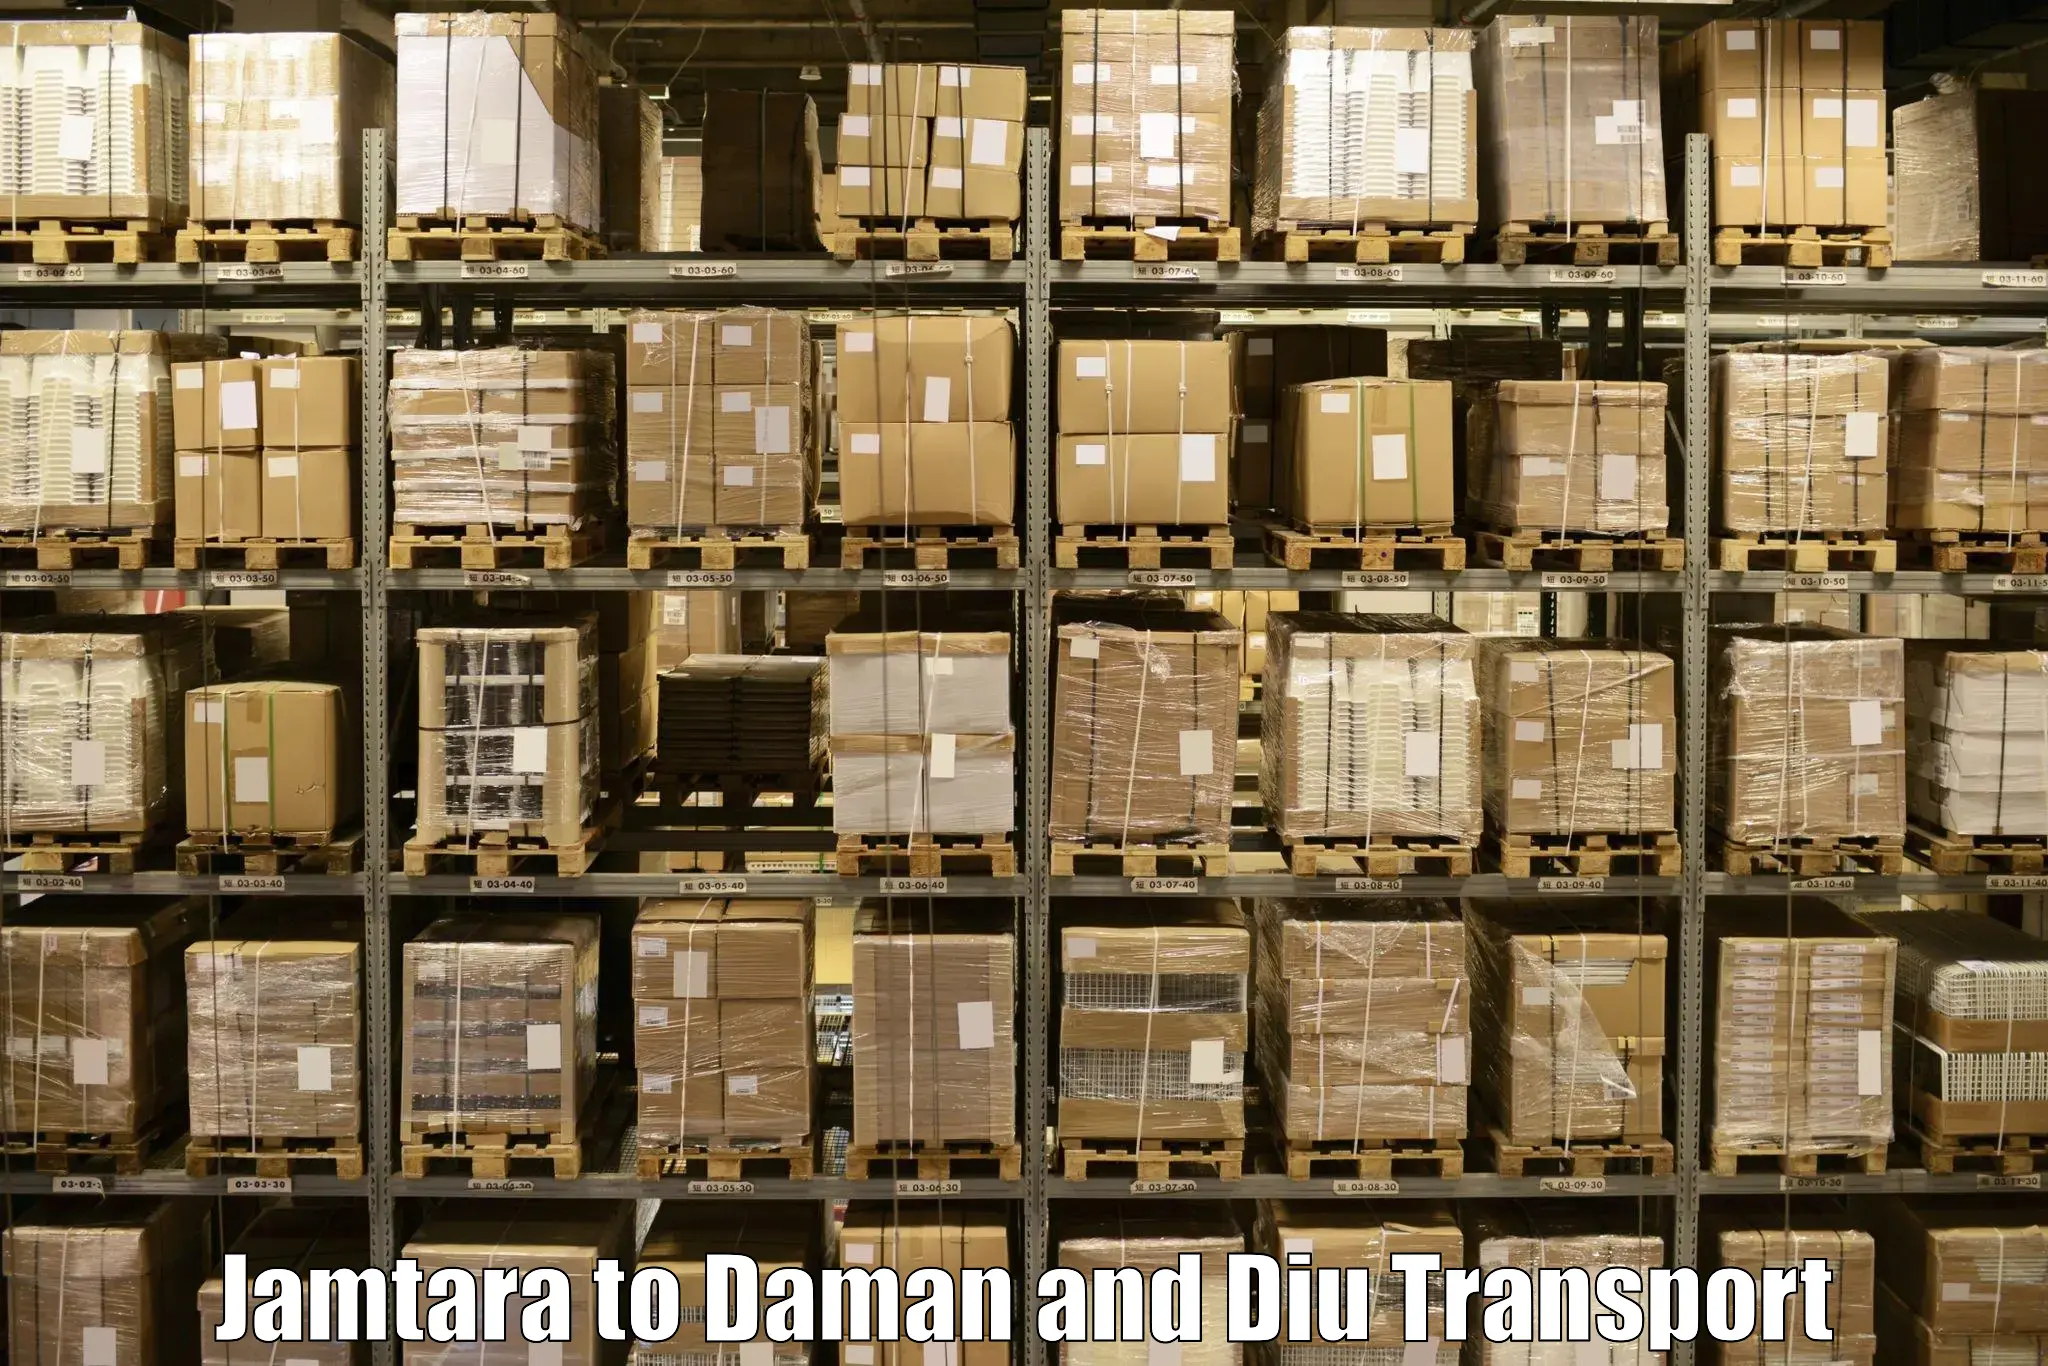 Cargo train transport services in Jamtara to Diu